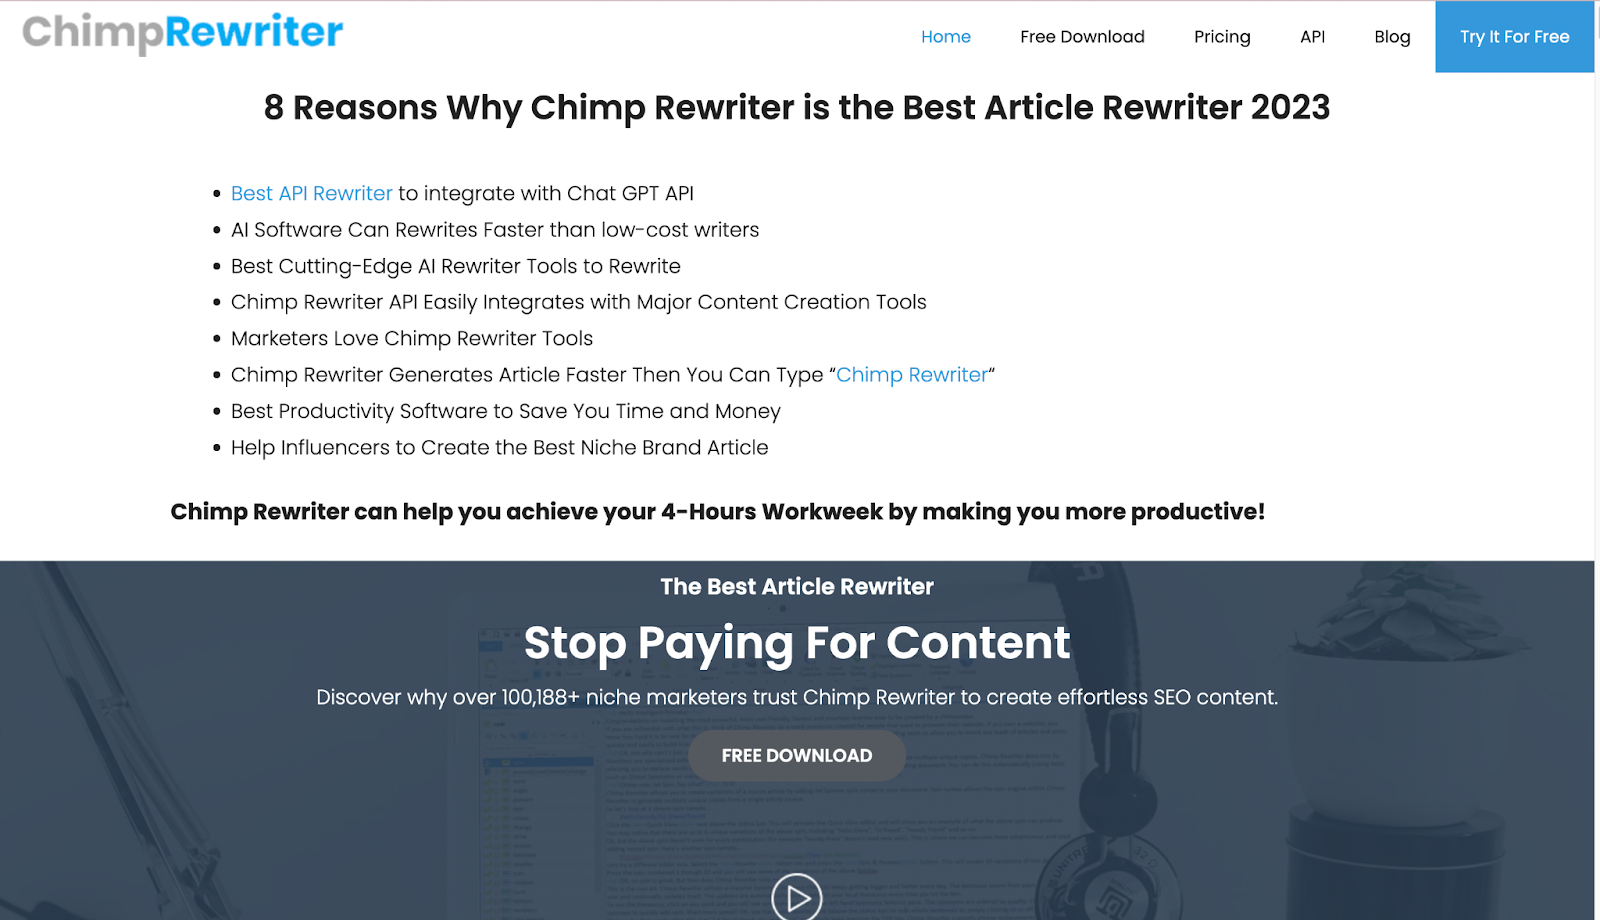 Chimp Rewriter AI Rewriter